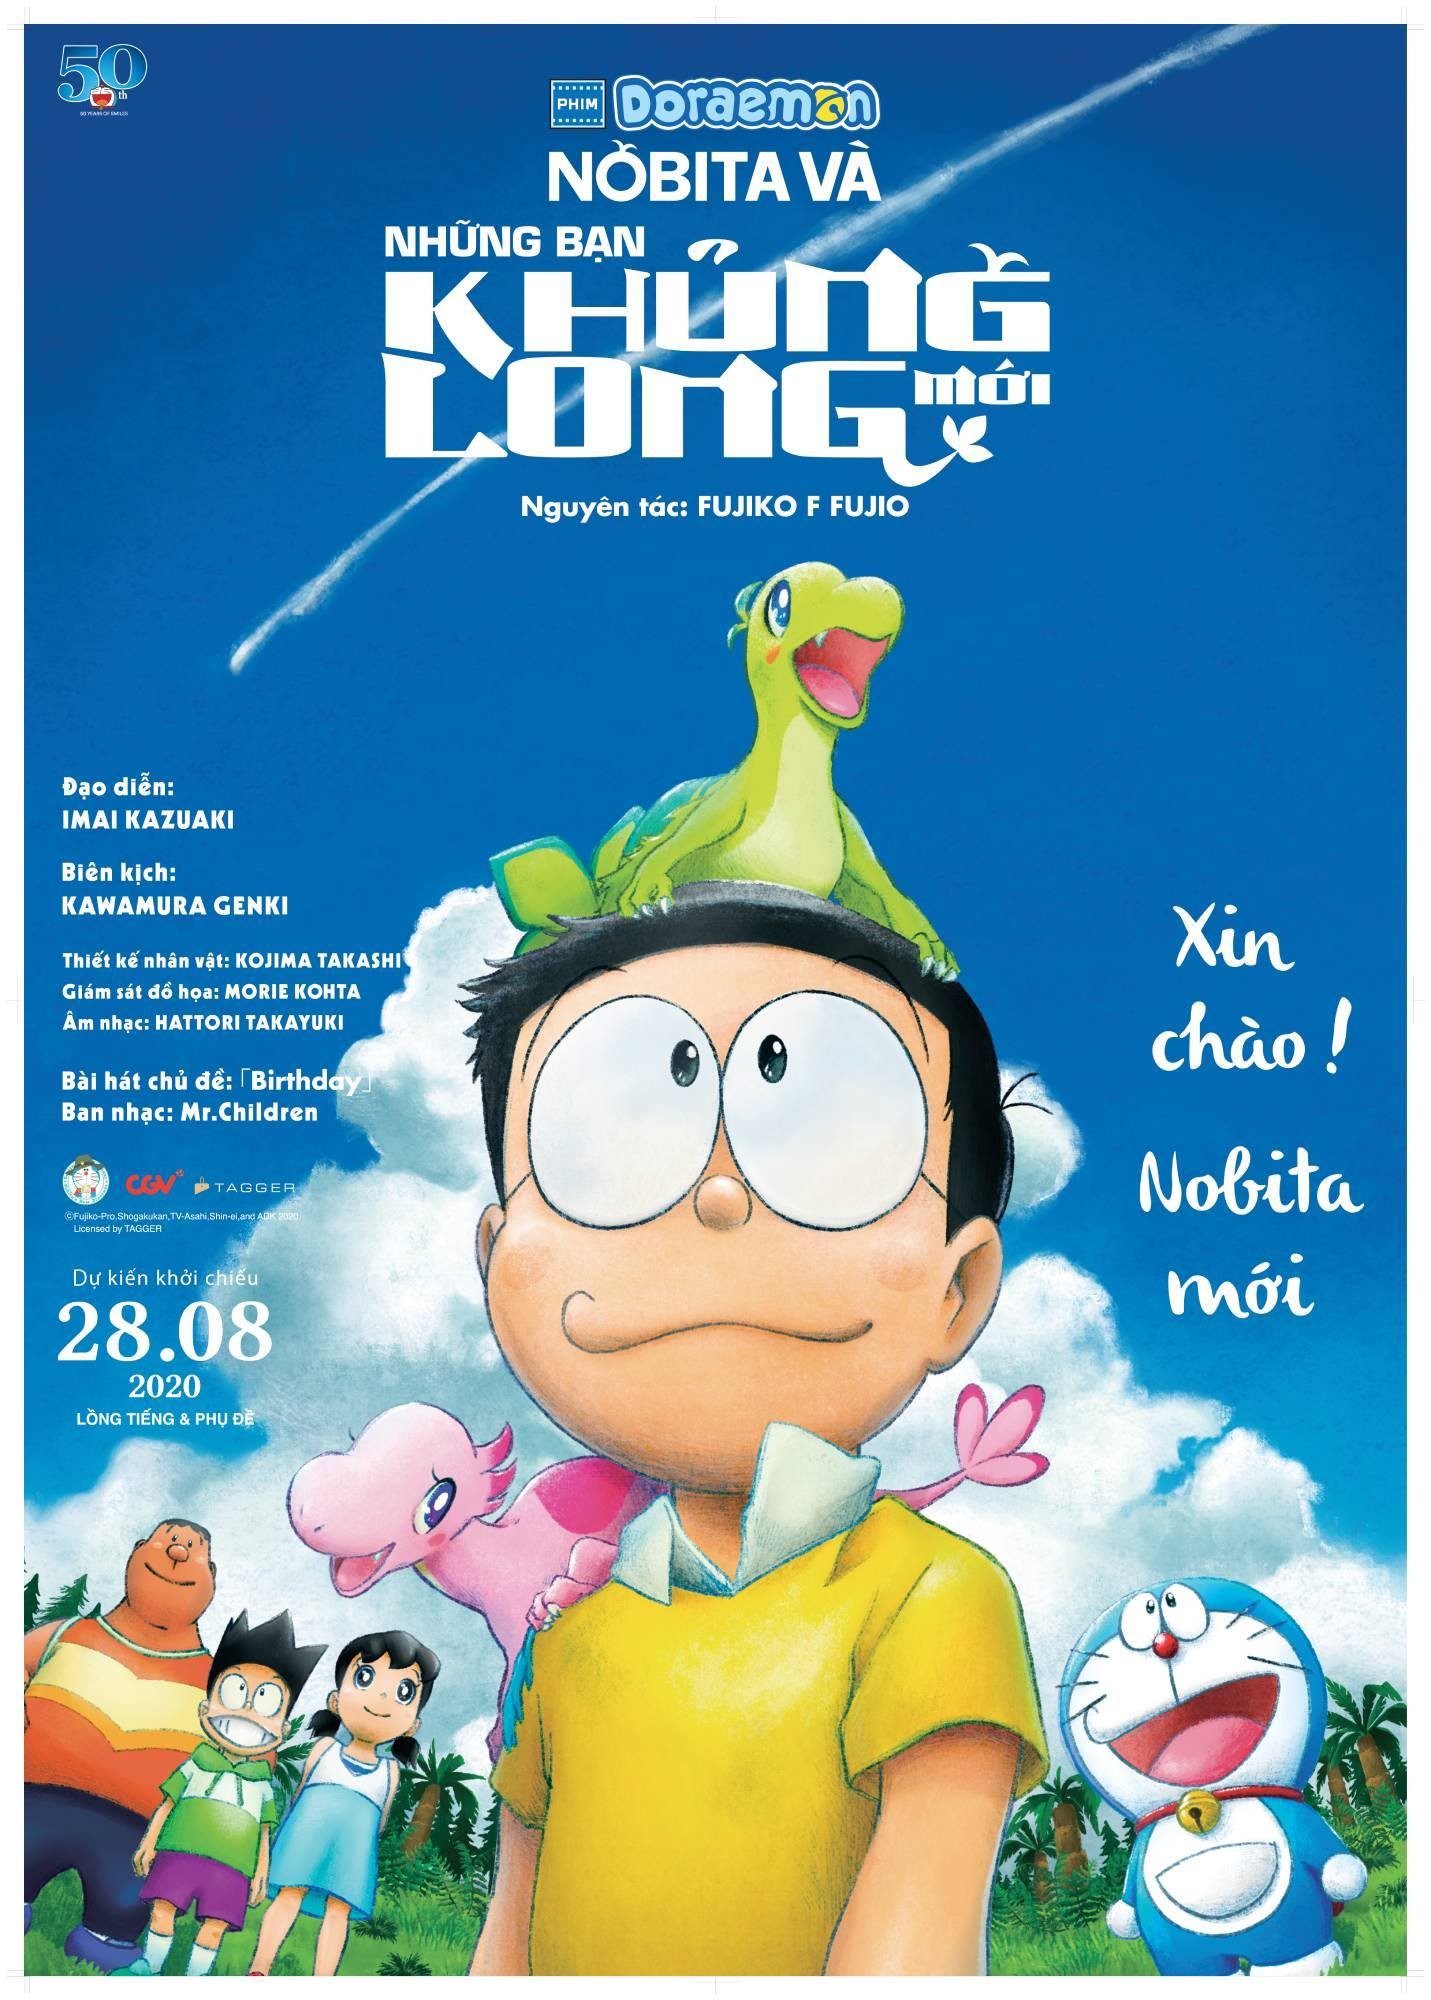 Nobita và bạn khủng long mới là một câu chuyện thú vị về câu chuyện về những con khủng long hồi sinh. Xem phim này sẽ giúp bạn tìm hiểu về những cuộc phiêu lưu tuyệt vời của Nobita và bạn bè.